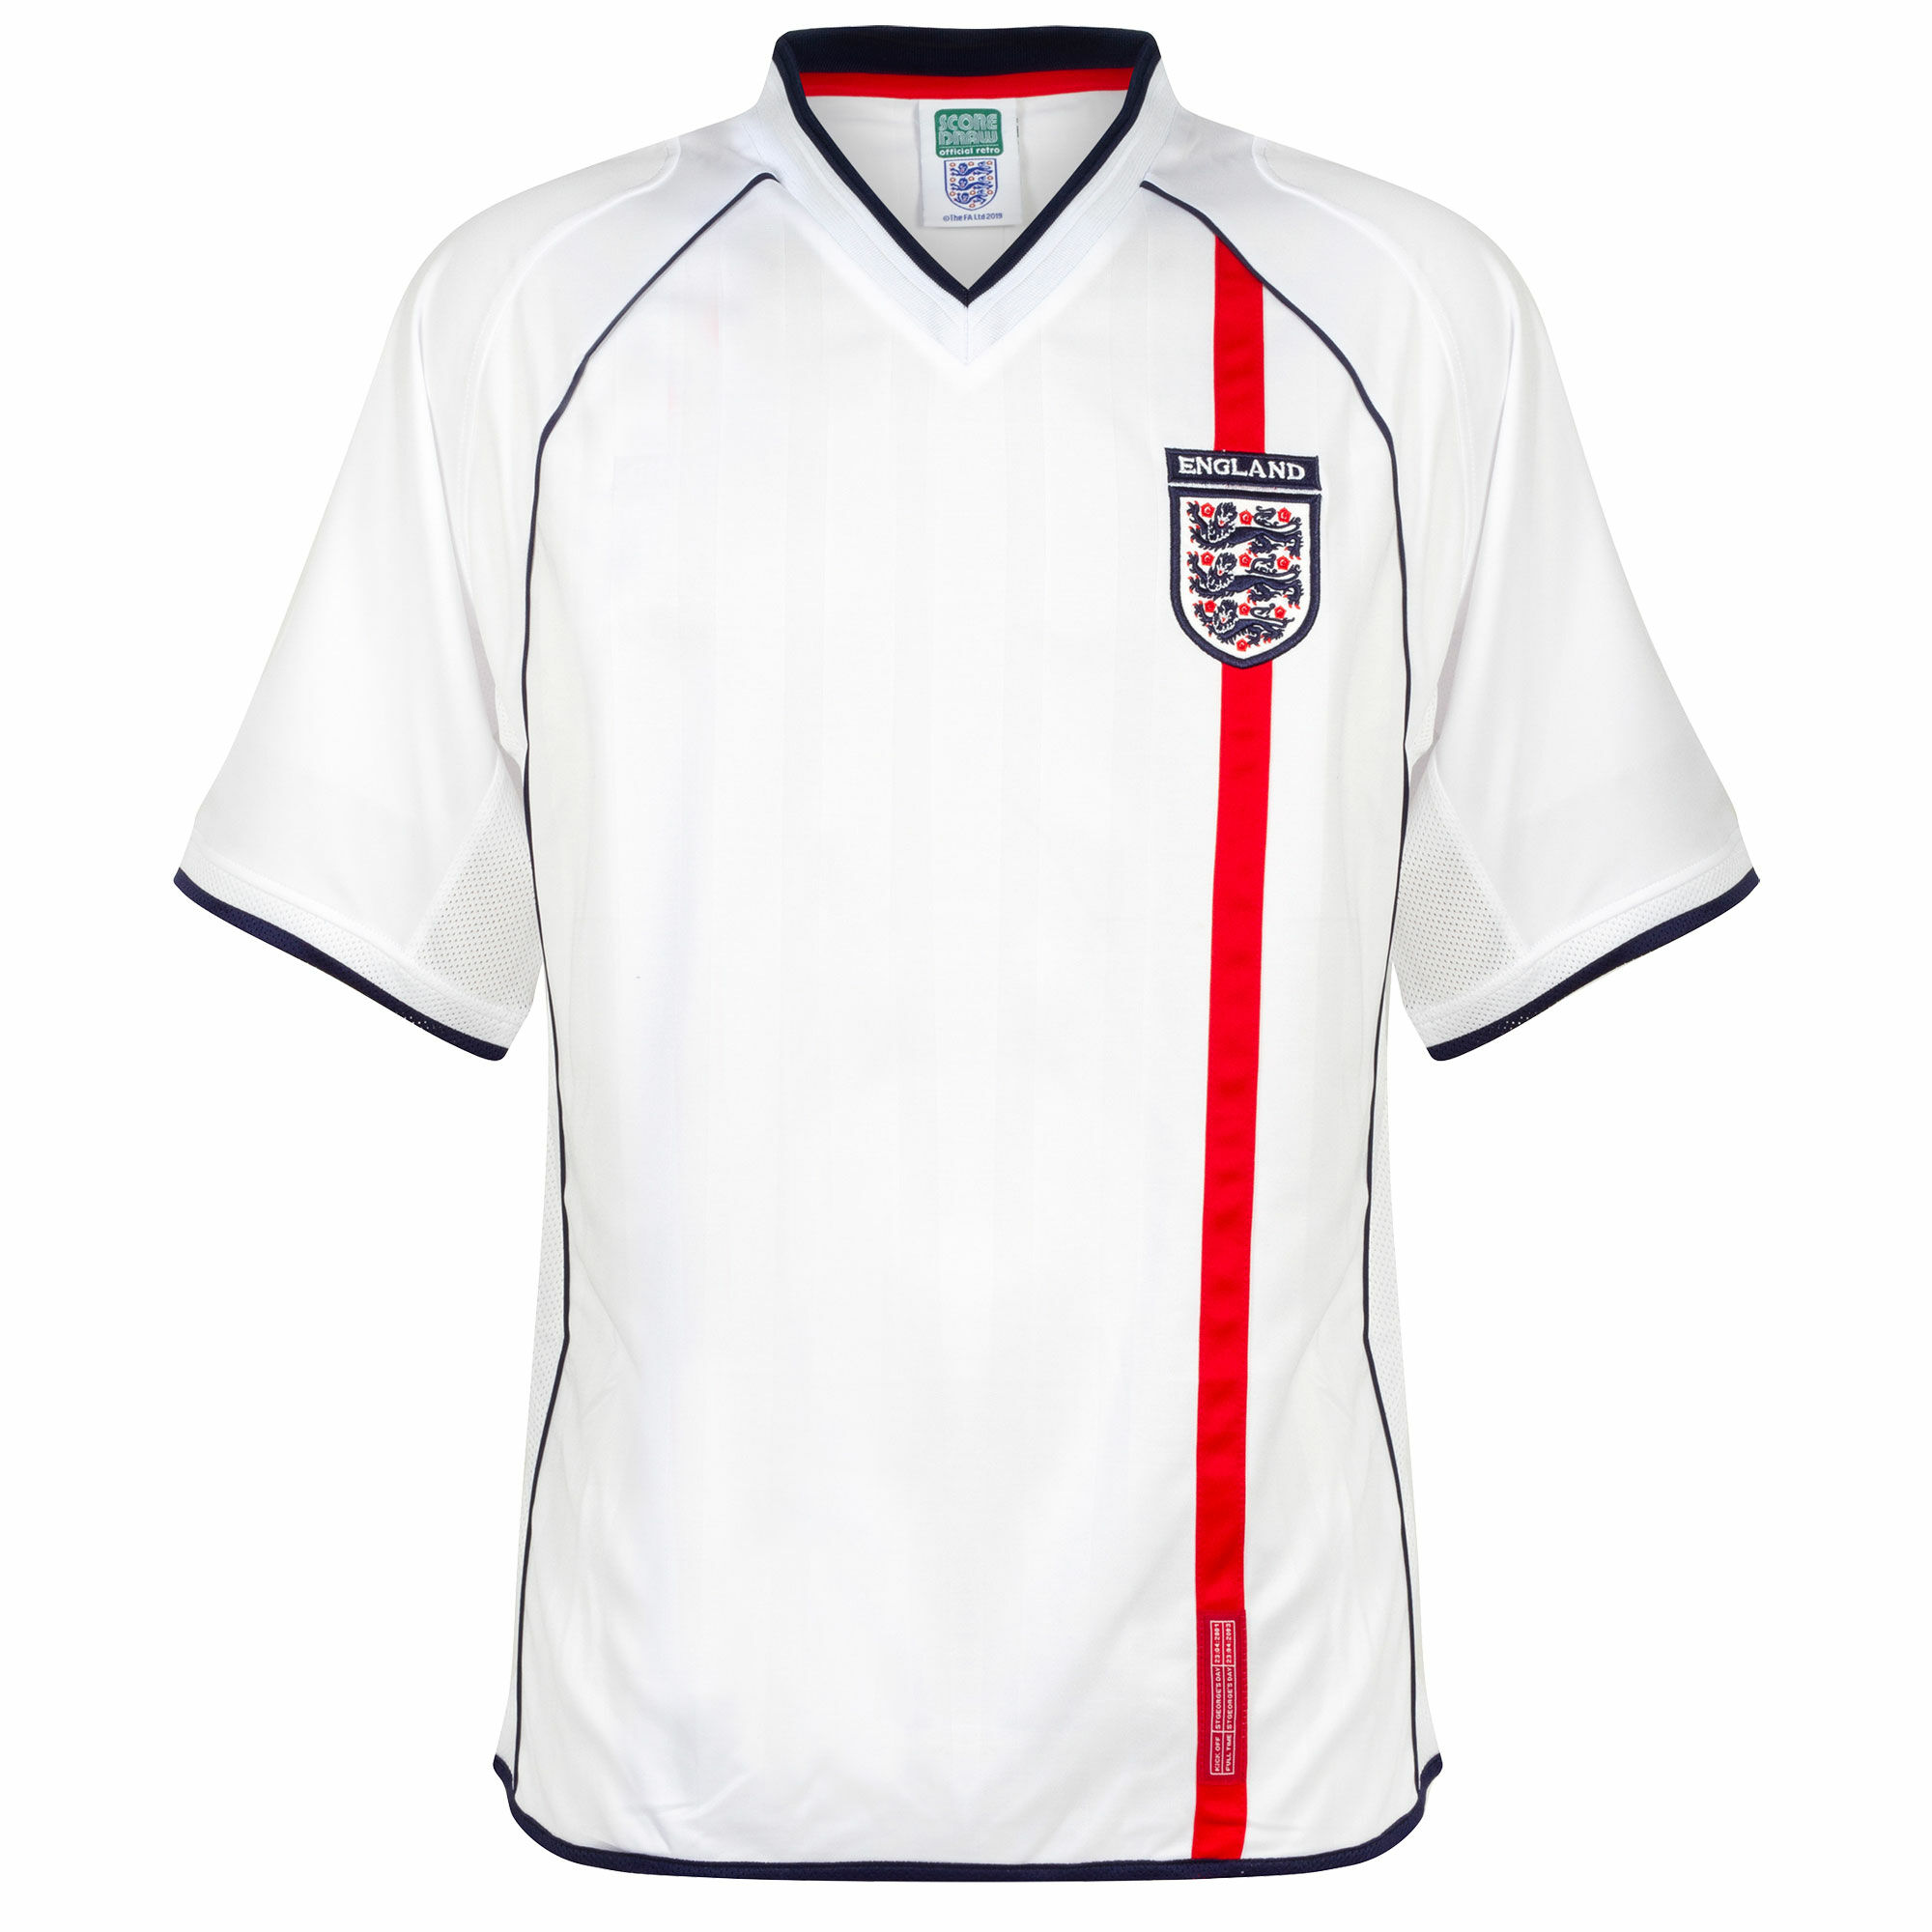 Anglie - Dres fotbalový - bílý, retrostyl, sezóna 2001/03, domácí